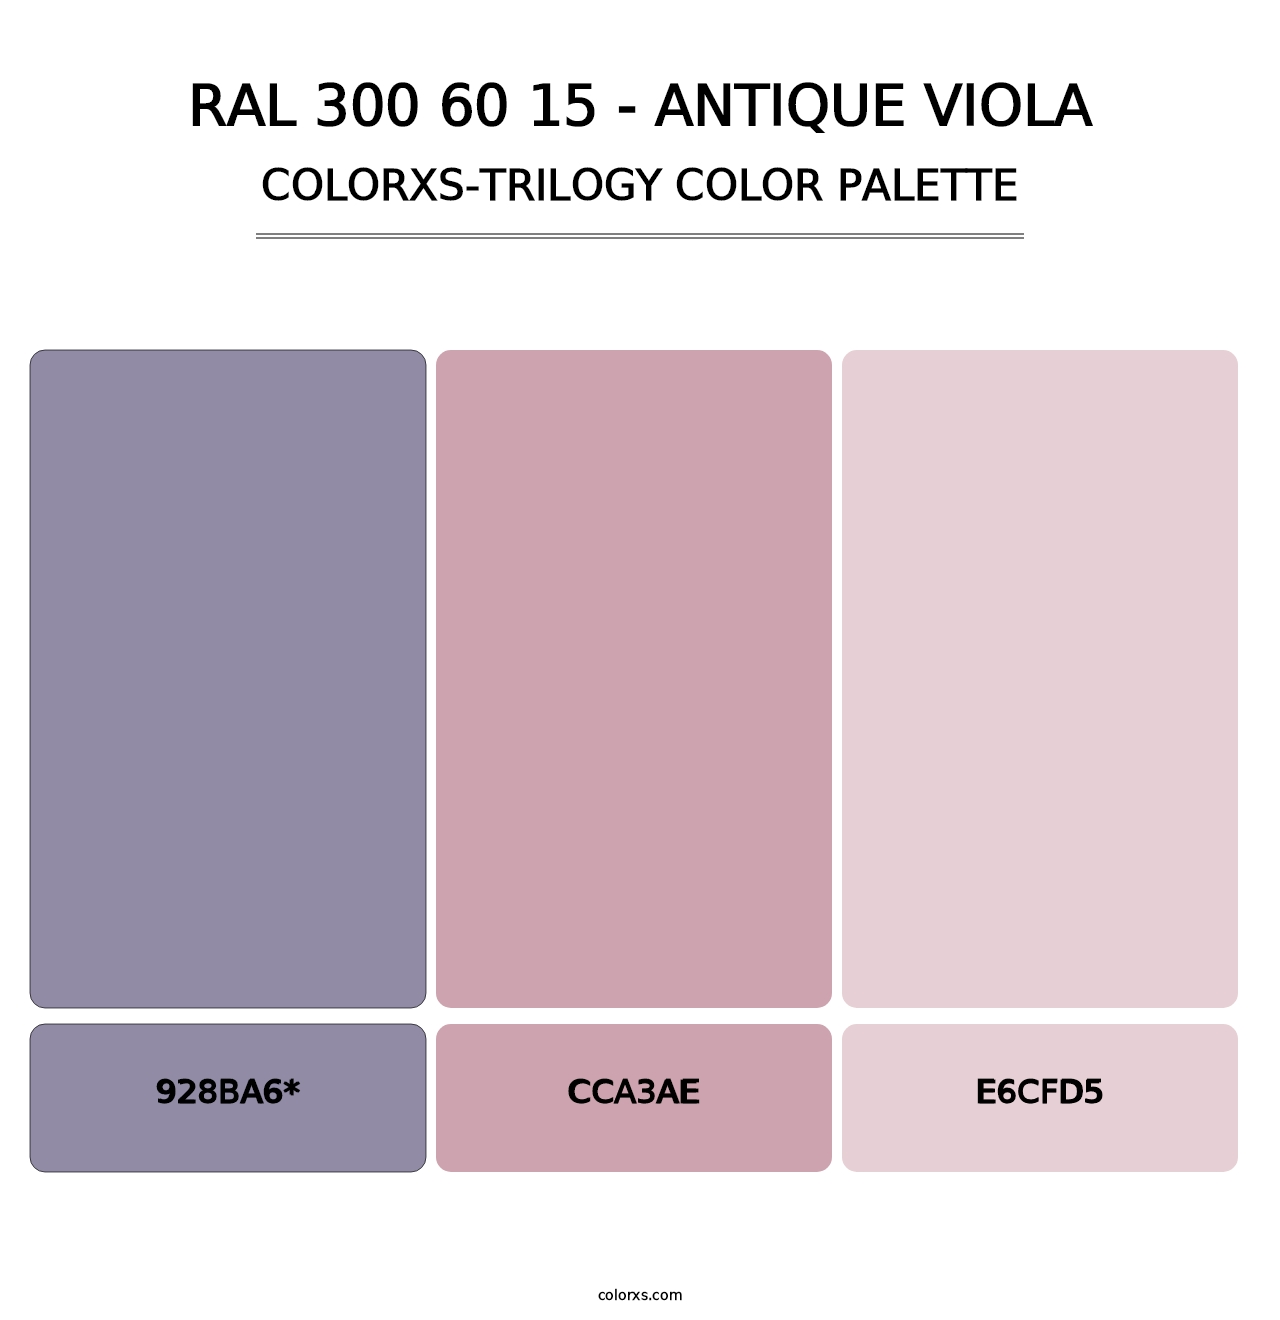 RAL 300 60 15 - Antique Viola - Colorxs Trilogy Palette